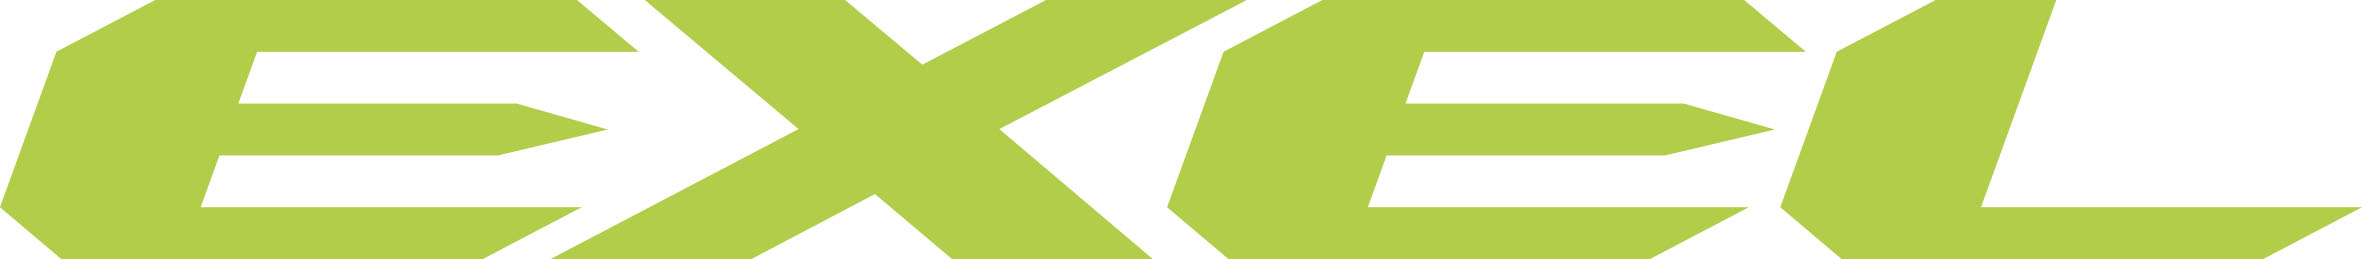 Logo firmy Exel producenta kijów do nordic walkingu